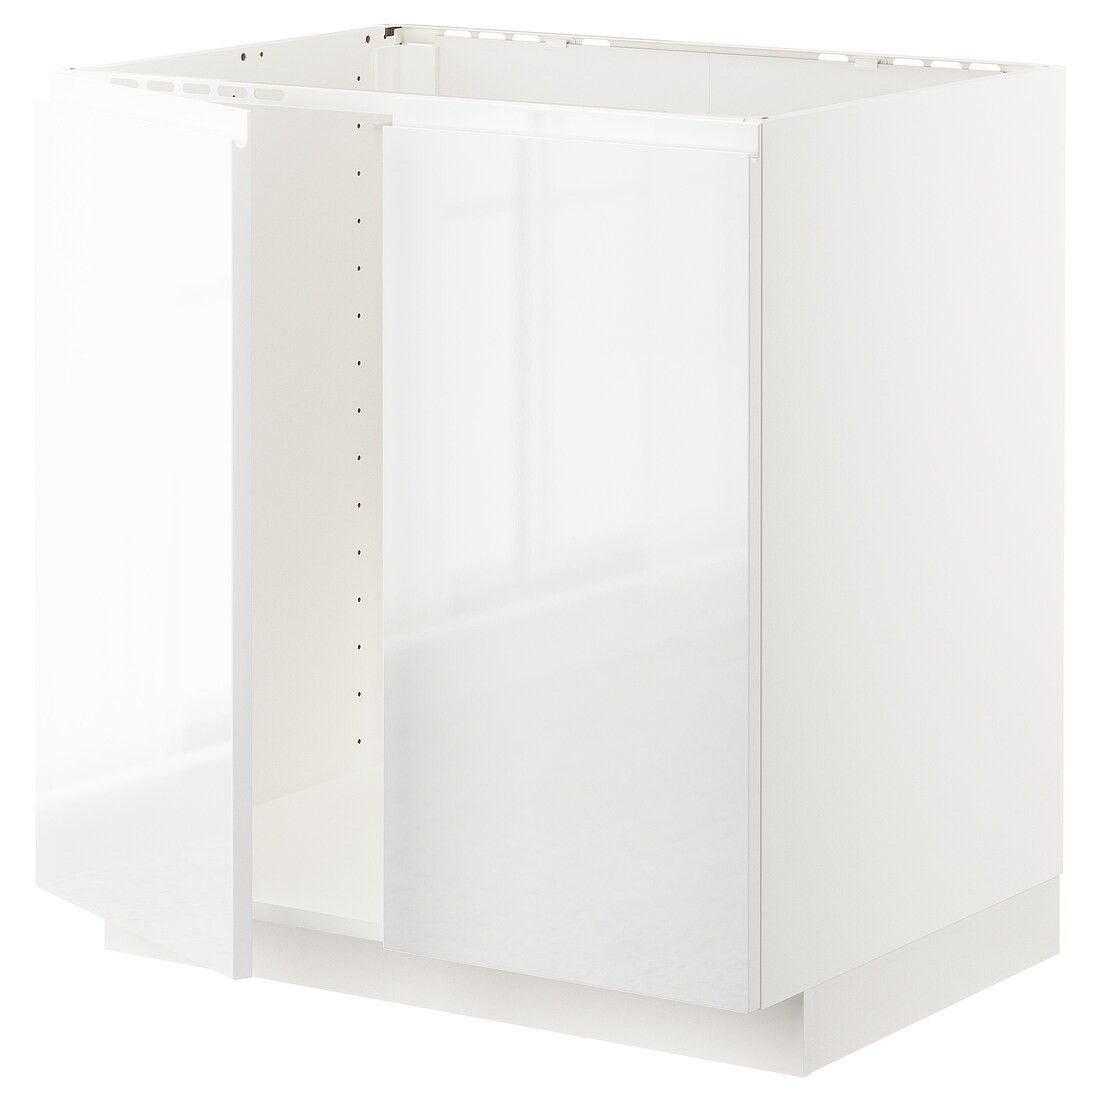 IKEA METOD МЕТОД Напольный шкаф для мойки, белый / Voxtorp глянцевый / белый, 80x60 см 69458732 694.587.32